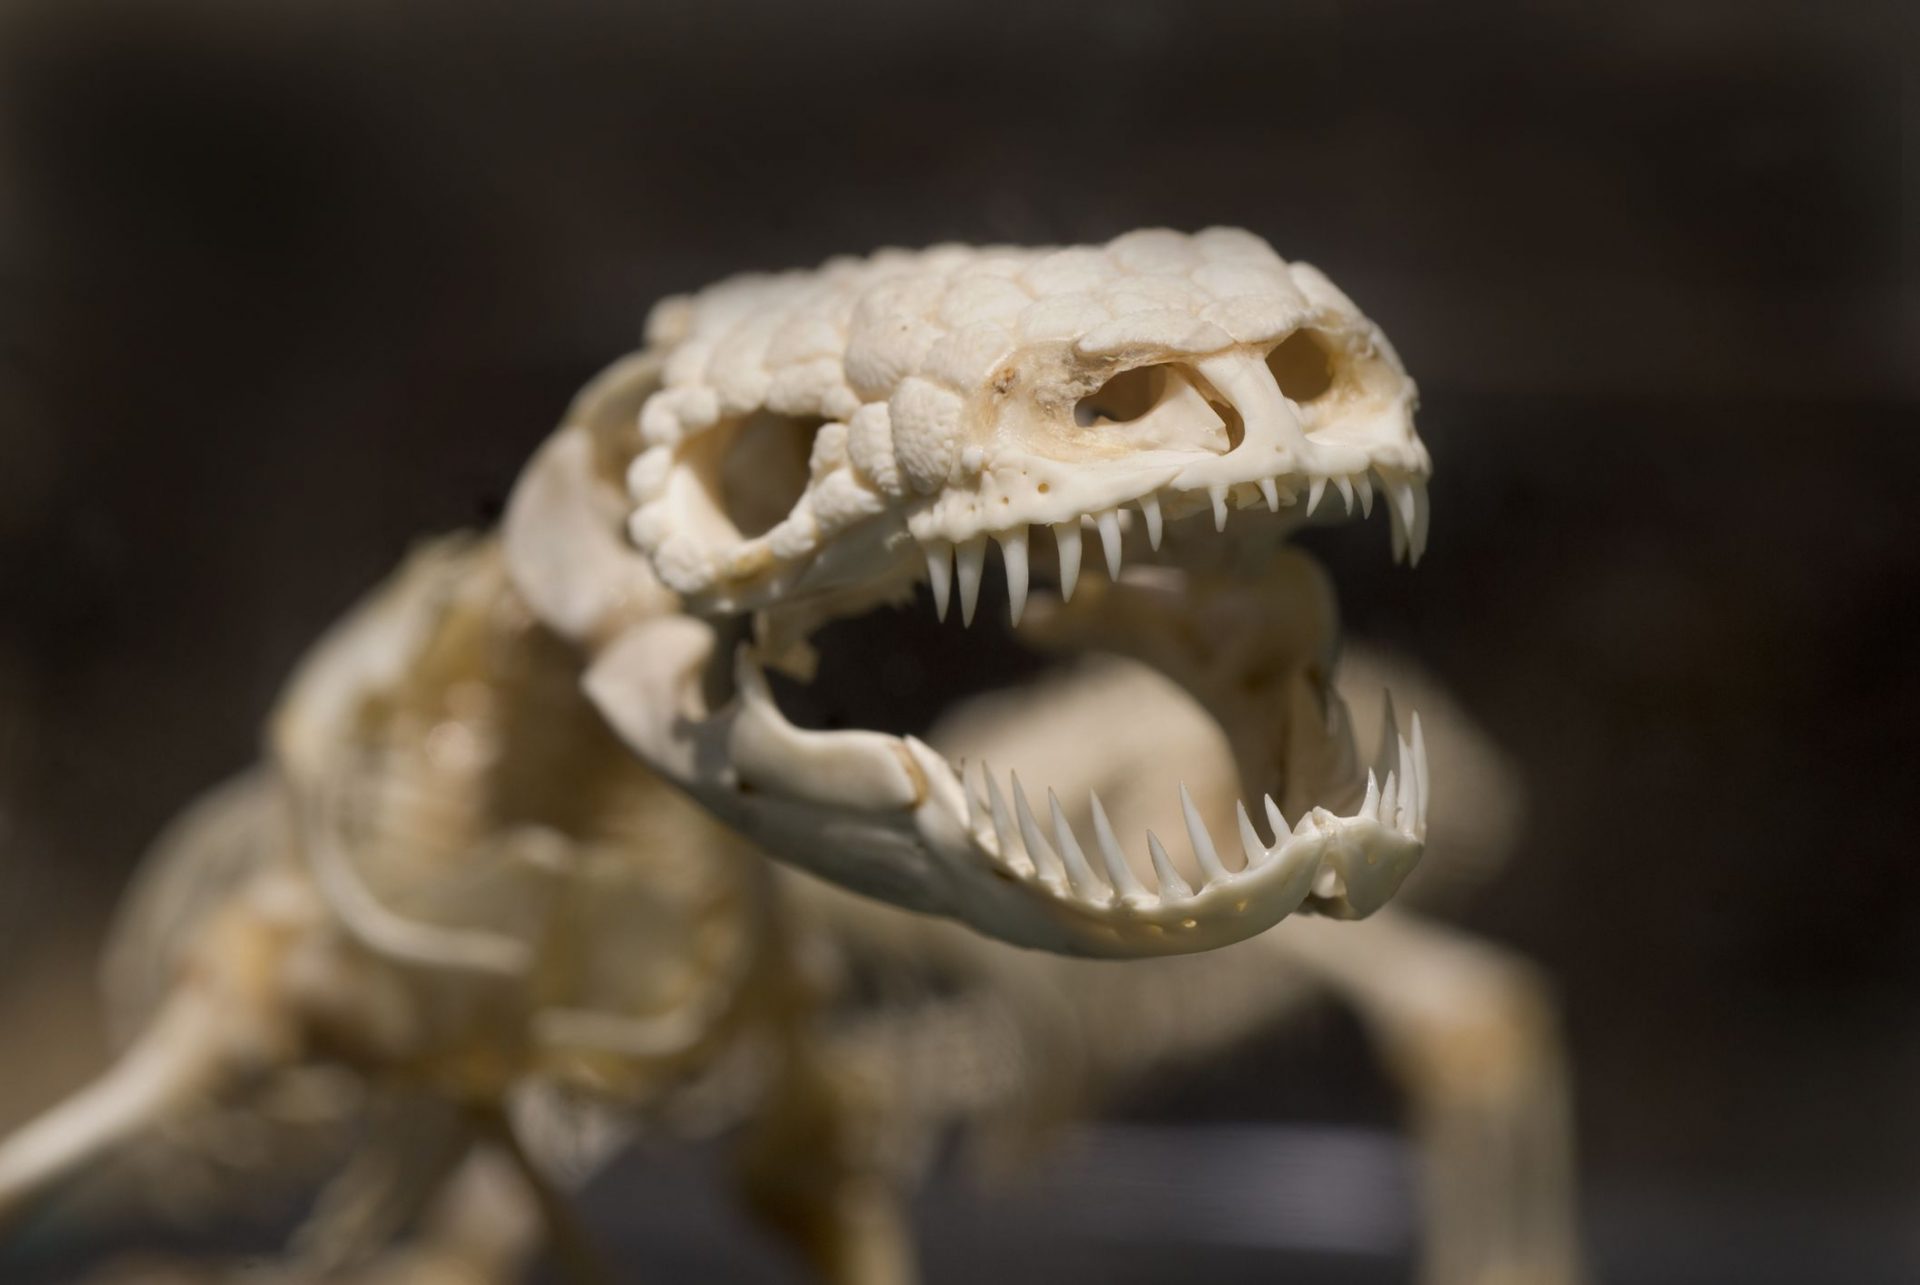 Esqueleto del Monstruo de Gila en exposición